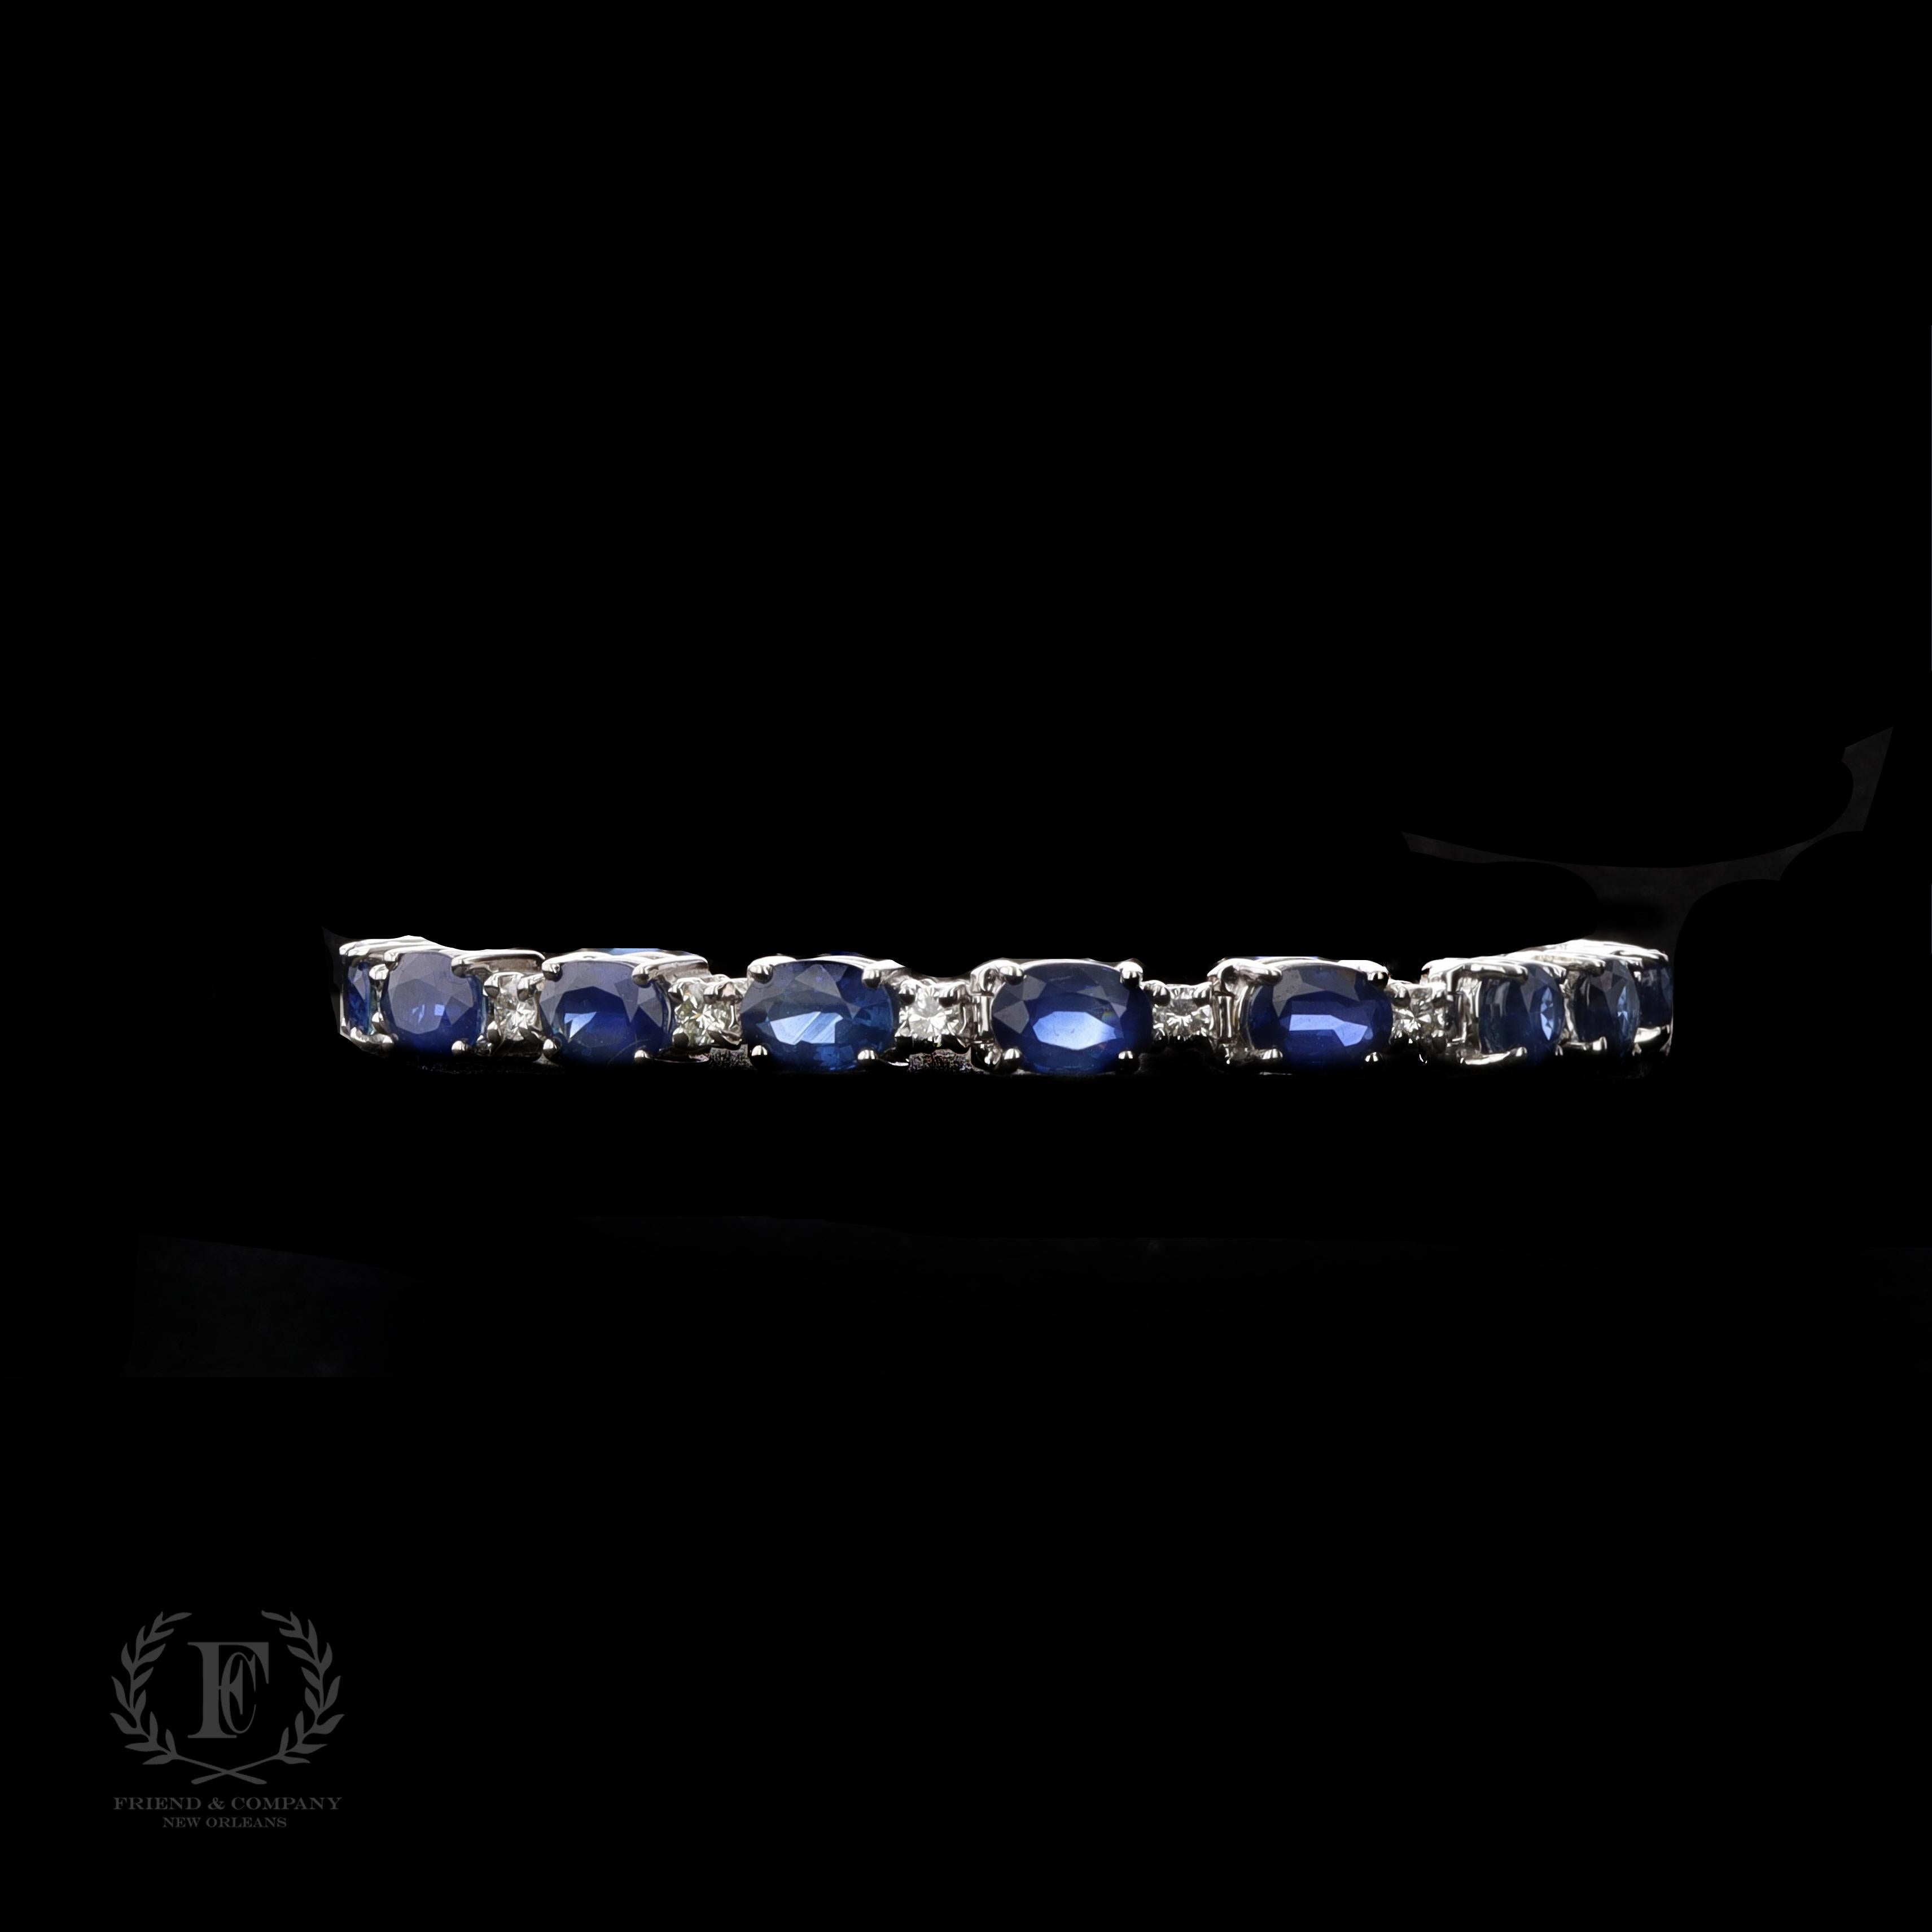 Dieses atemberaubende Armband mit Saphiren und Diamanten ist ein Stück, das man ein Leben lang in Ehren hält. Er ist aus 14 Karat Weißgold gefertigt und enthält 17 blaue Saphire im Ovalschliff mit einem Gesamtgewicht von 14,28 Karat. Das Armband